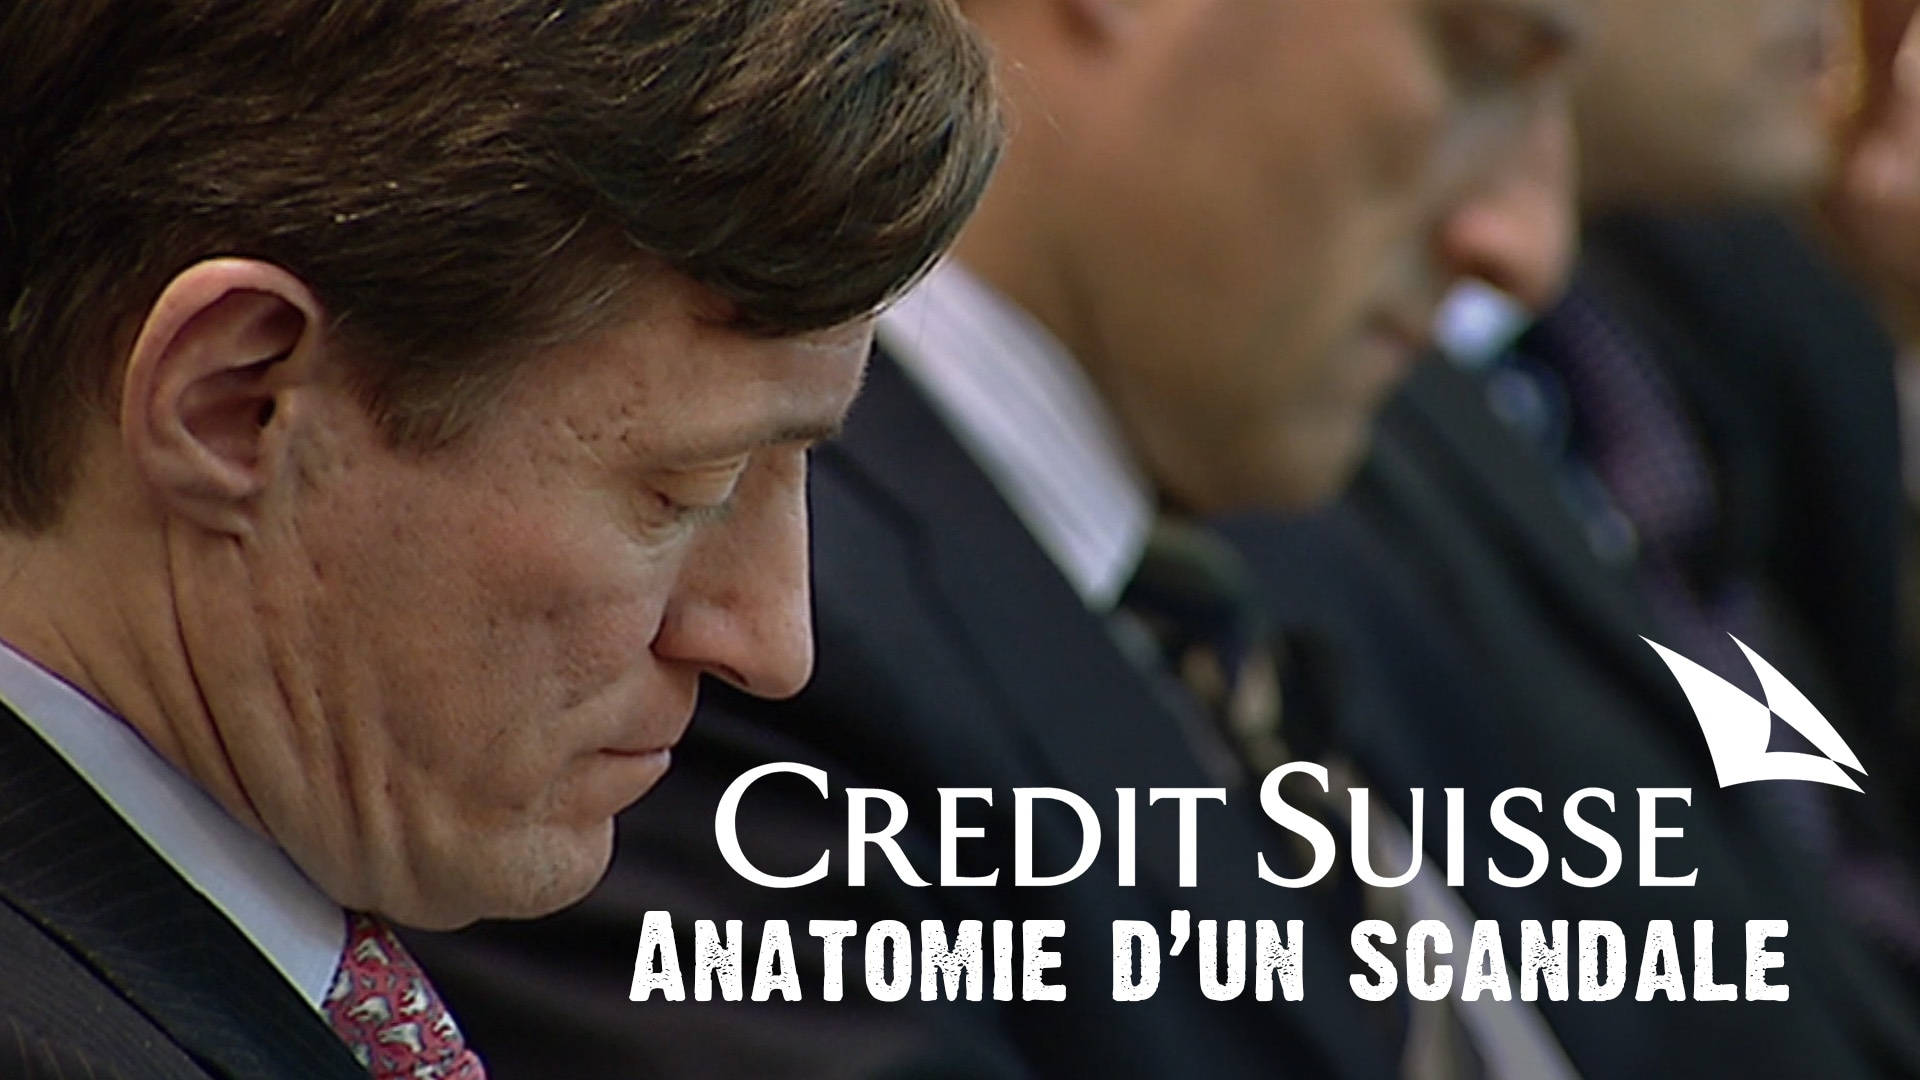 Credit Suisse - Anatomie d'un scandale